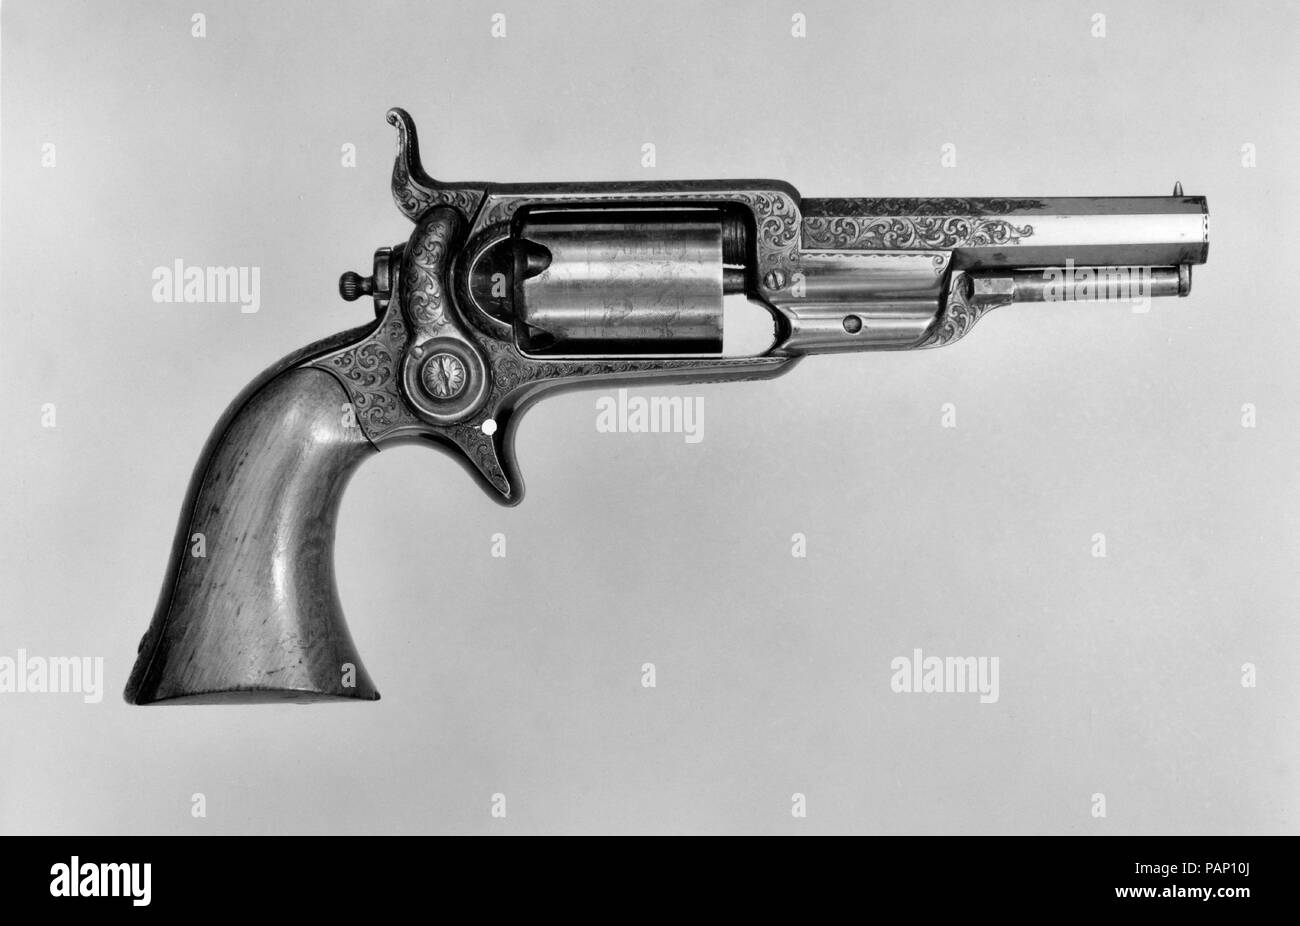 Modèle Colt 1855 Pocket Revolver à percussion, n° de série 4460, avec étui et accessoires. Culture : American, Hartford, Connecticut. Dimensions : L. 7 7/8 in. (19,99 cm) ; L. de baril 3 1/2 in. (8,89 cm) ; Cal. .28 dans. (7 mm) ; Cas 9 3/8 x 5 3/4 x 1 7/8 in. (23,8 x 14,61 x 4,75 cm) ; L.-clé de tournevis 3 1/4 in. (8,26 cm) ; plus grande clé de W.-tournevis 1 3/8 in. (3,48 cm) ; L. d'apprêt 4 5/8 in. (11,73 cm) ; plus grande W. de primer 2 in. (5,08 cm) ; L. de moules à balles 4 3/8 in. (11,1 cm). Fabricant : Samuel Colt (American, Hartford, Connecticut 1814-1862). Date : 1855. Ce revolver a été pr Banque D'Images